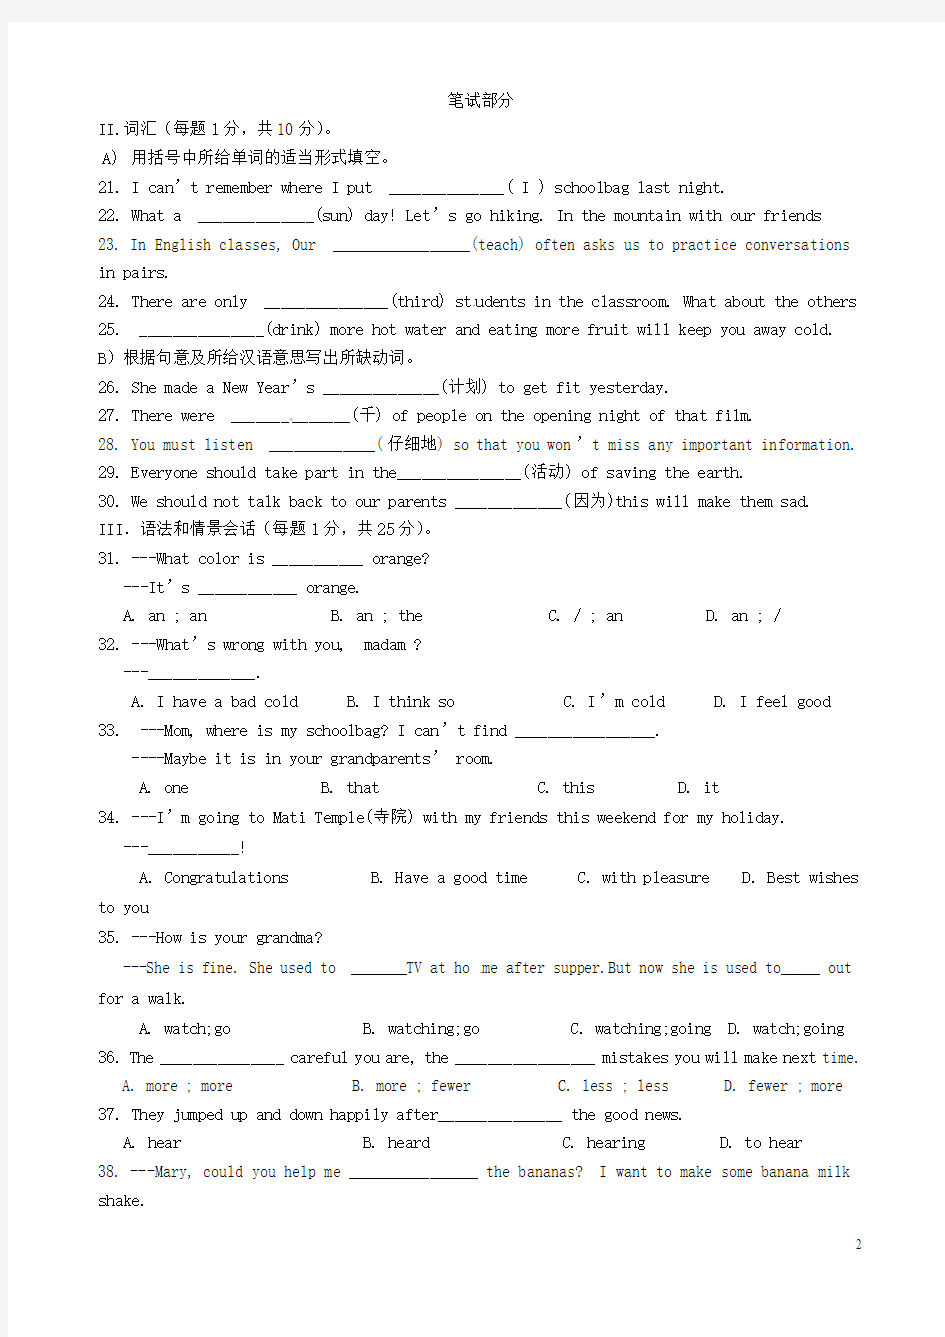 甘肃省张掖市第四中学2015届九年级英语5月份模拟考试试题